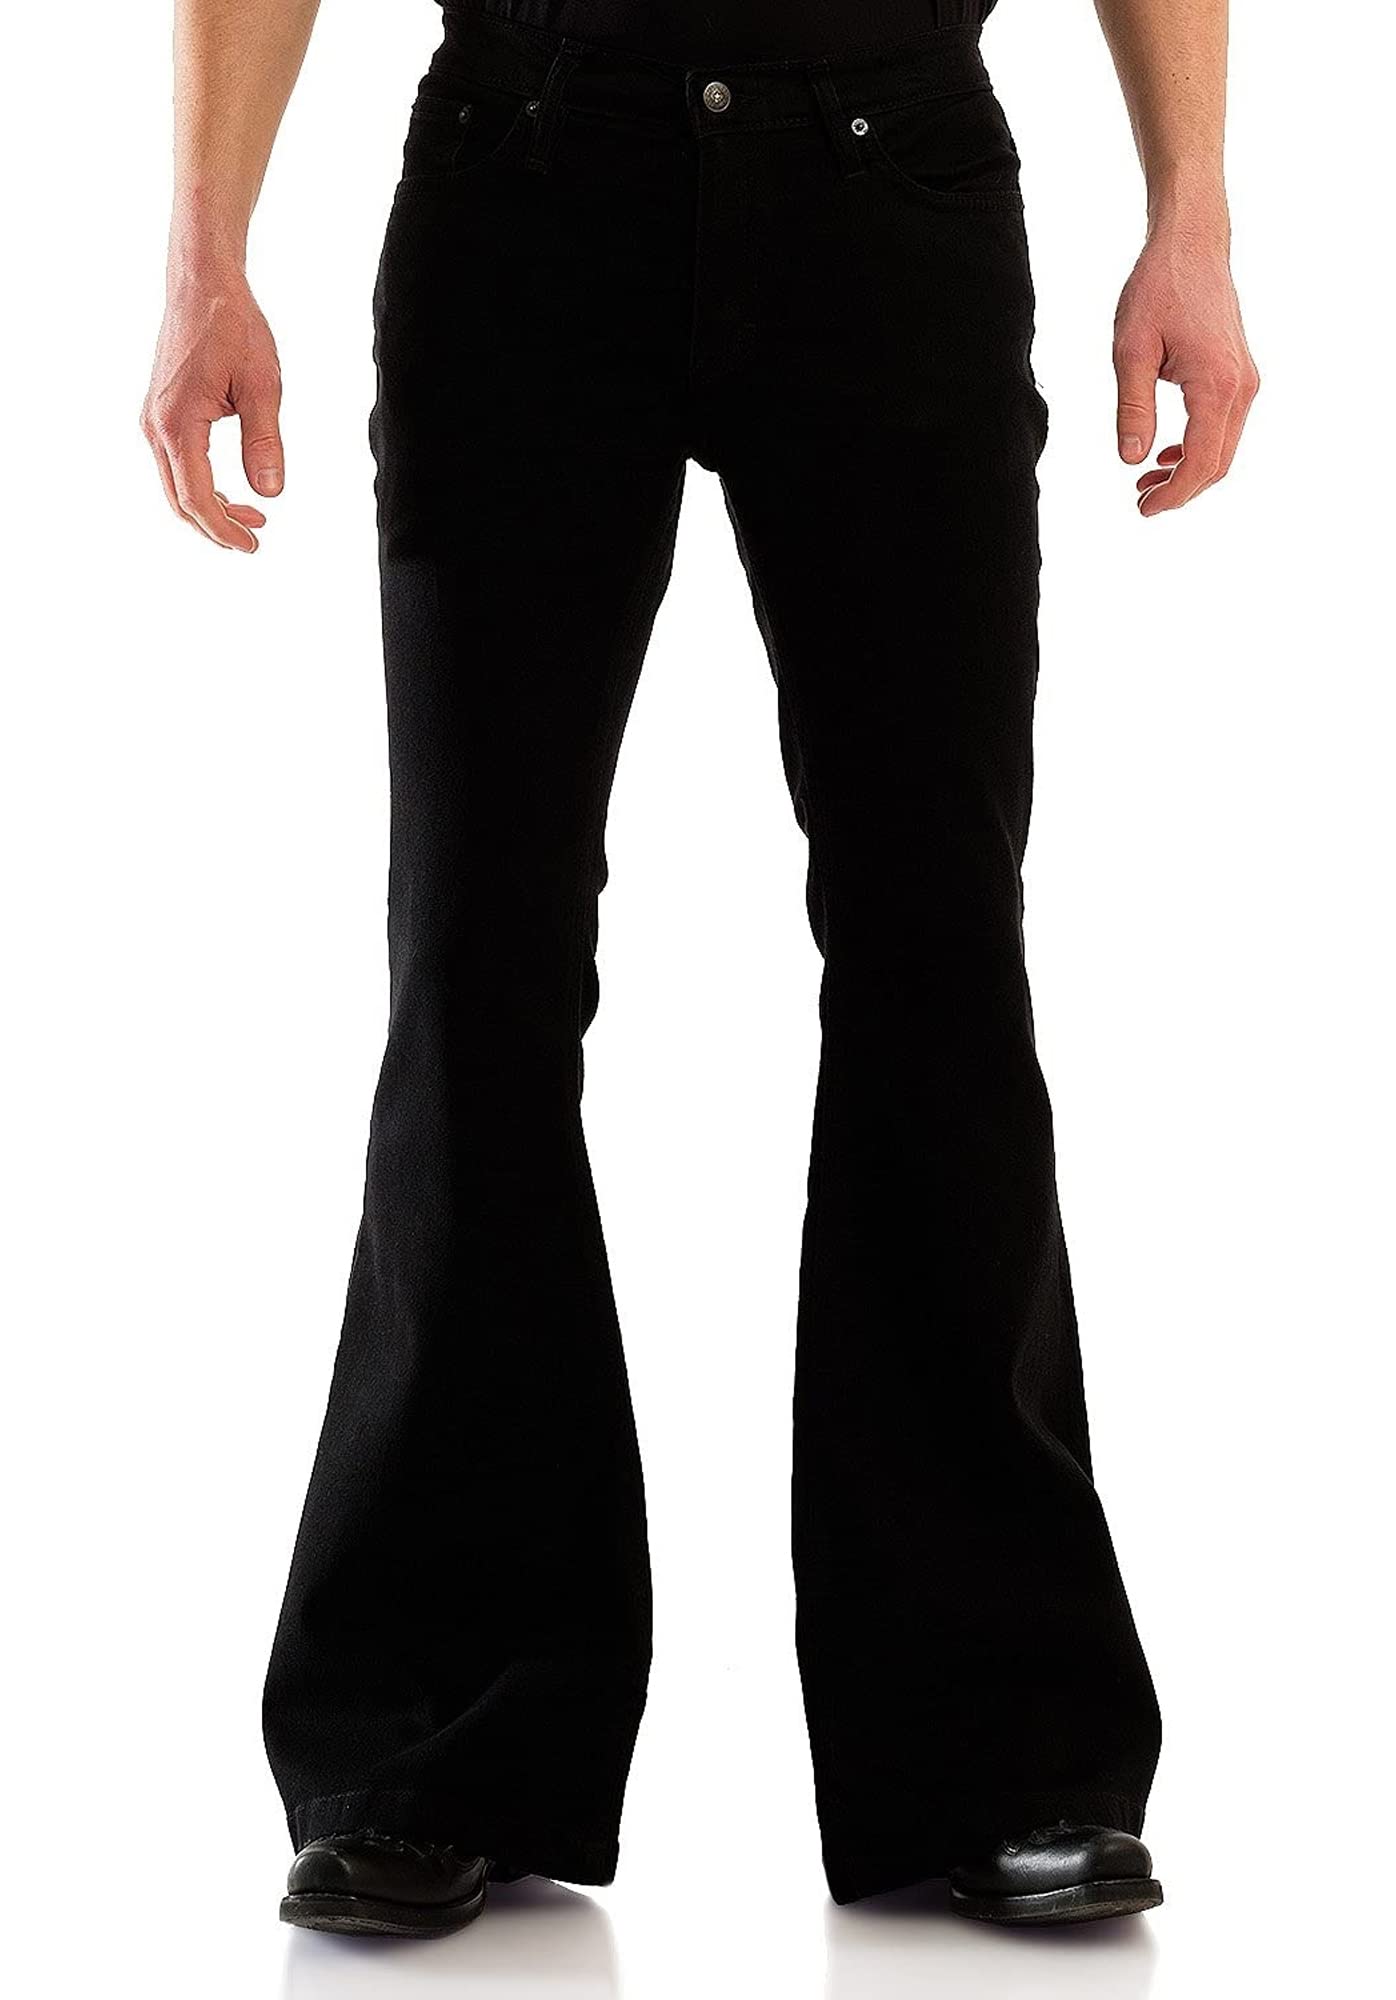 70's Black Disco Pants - Online Costume Shop - Australia